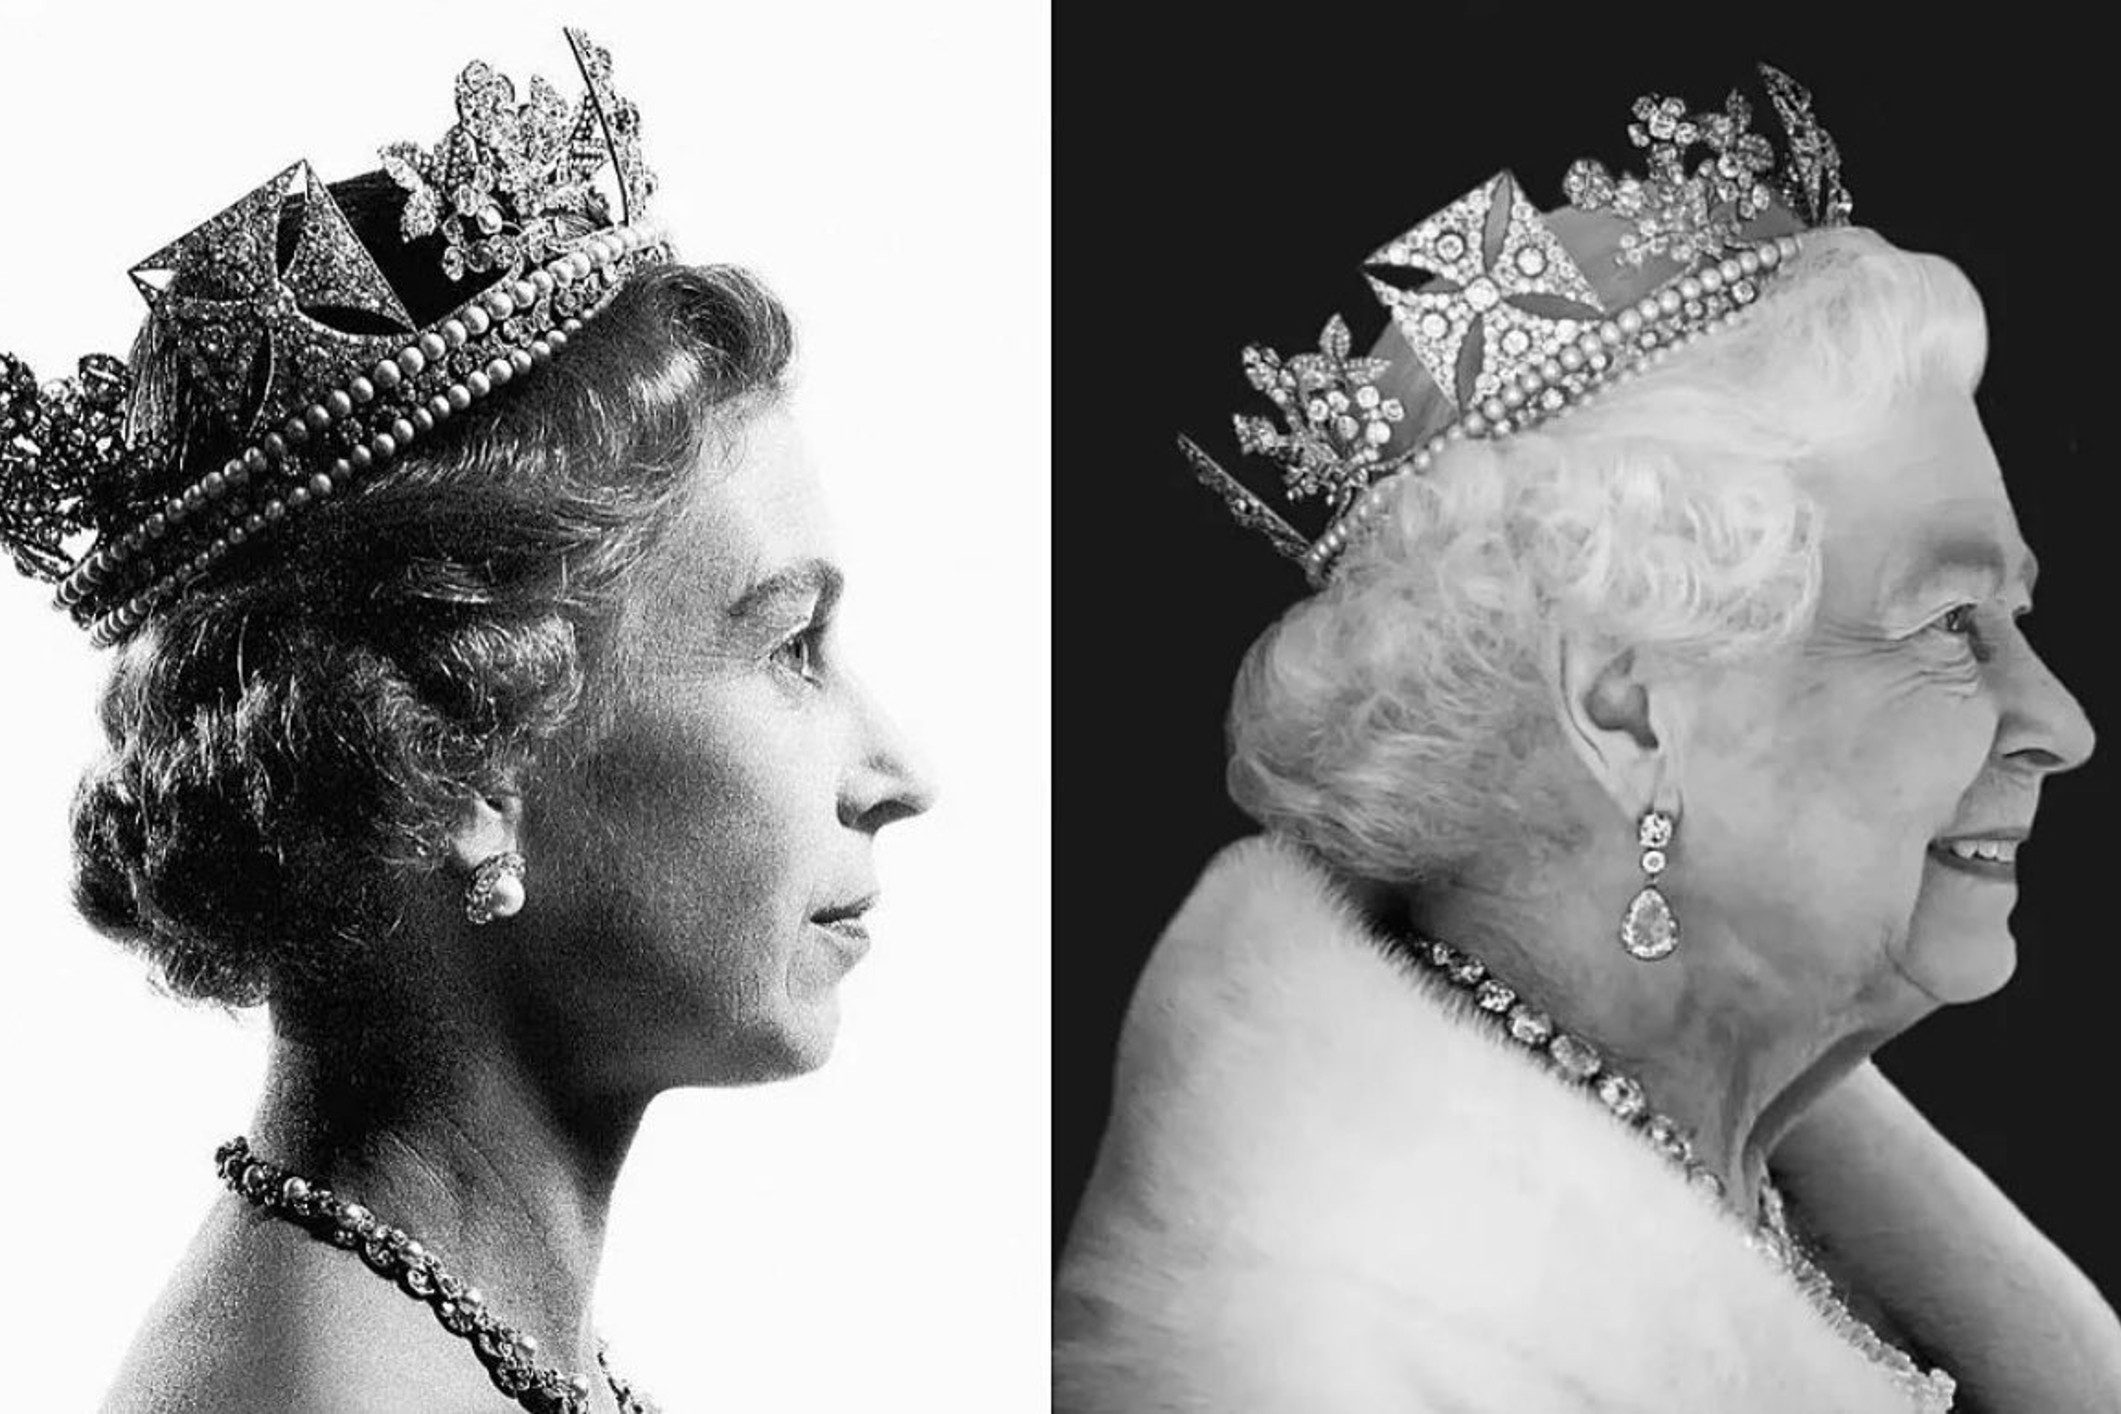 BREAKING: Queen Elizabeth II, longest reigning Commonwealth monarch, dies